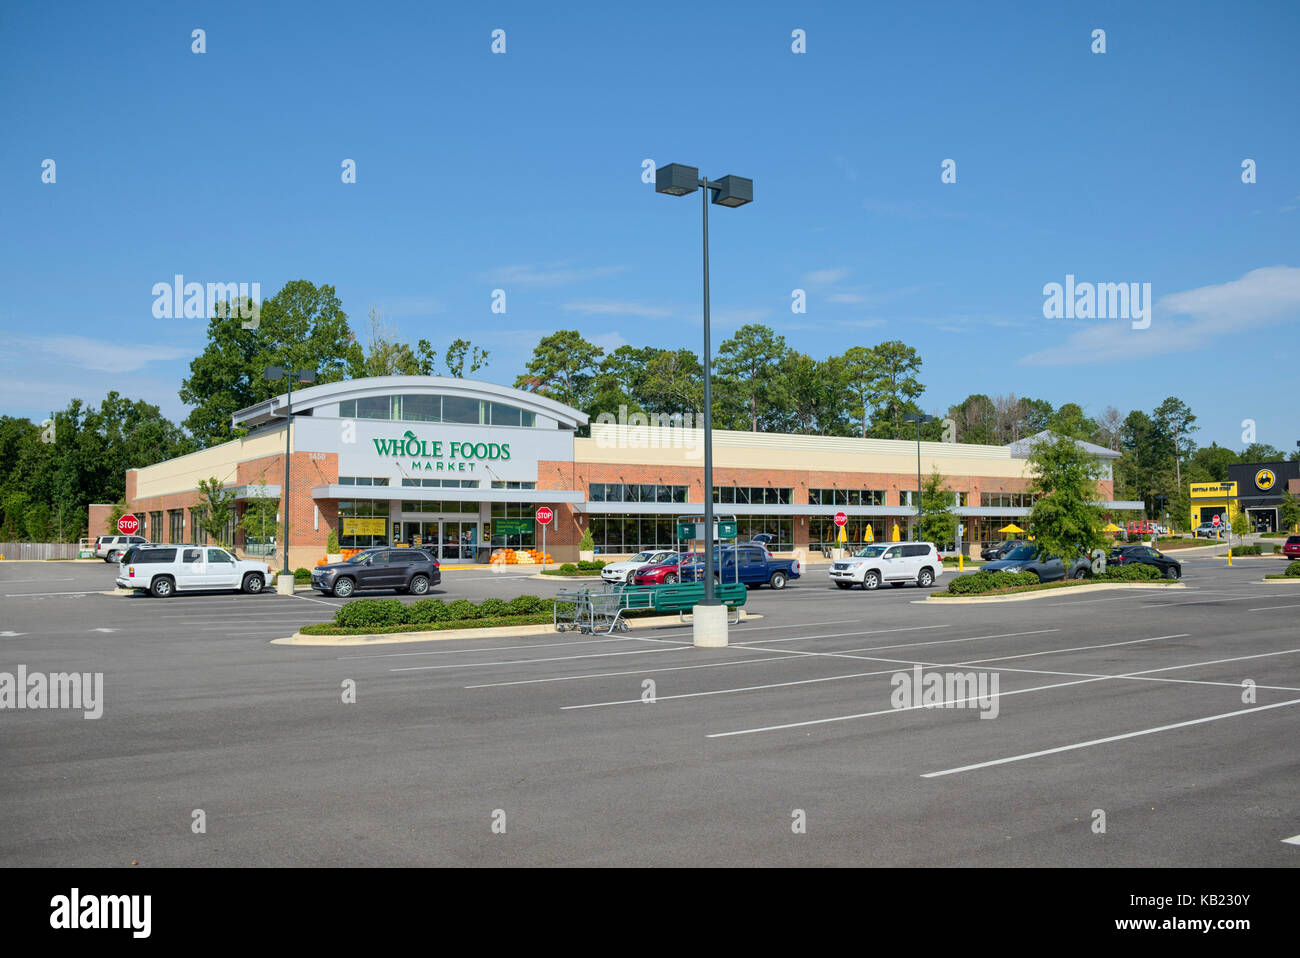 Tienda Whole Foods en chase esquina, Montgomery, Alabama, EE.UU. es una nueva tienda de comestibles para este pequeño mercado. Foto de stock